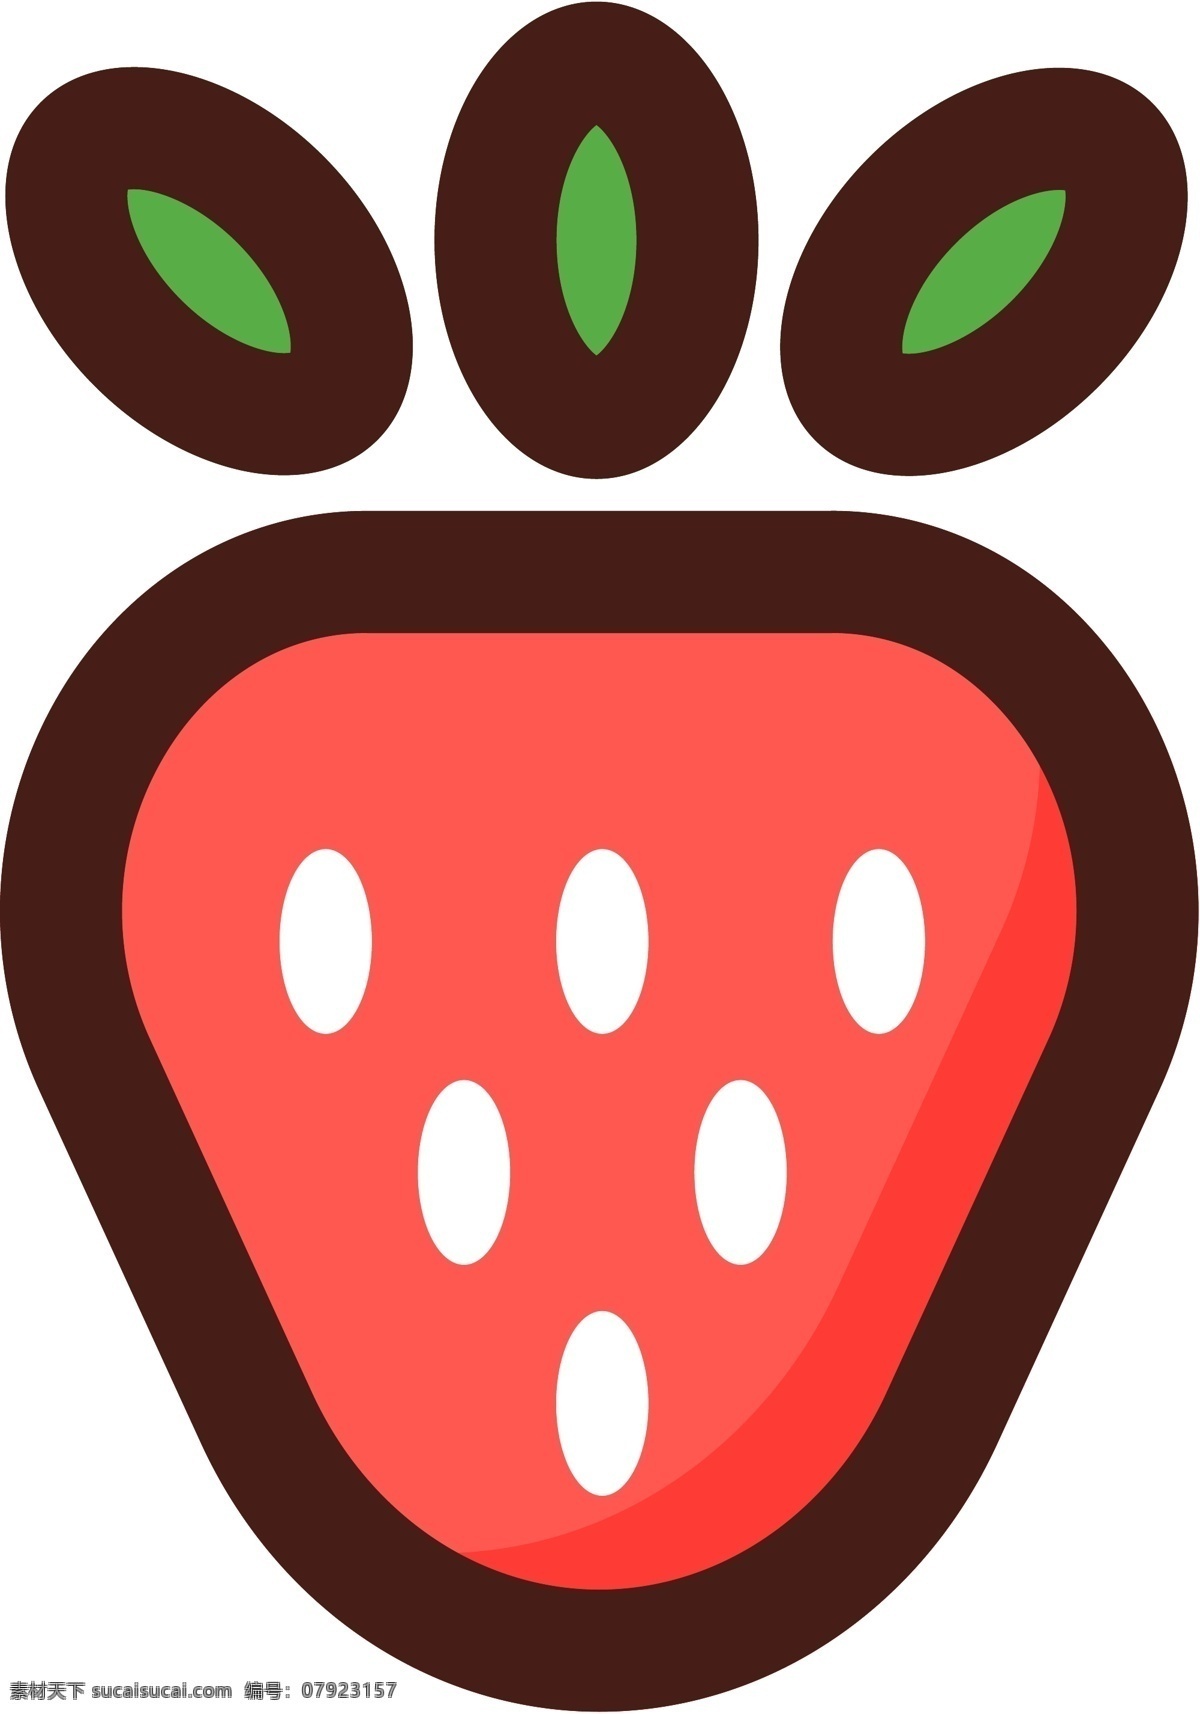 草莓图案 草莓 矢量草莓 草莓元素 卡通草莓 水果 矢量水果 卡通水果 水果图案